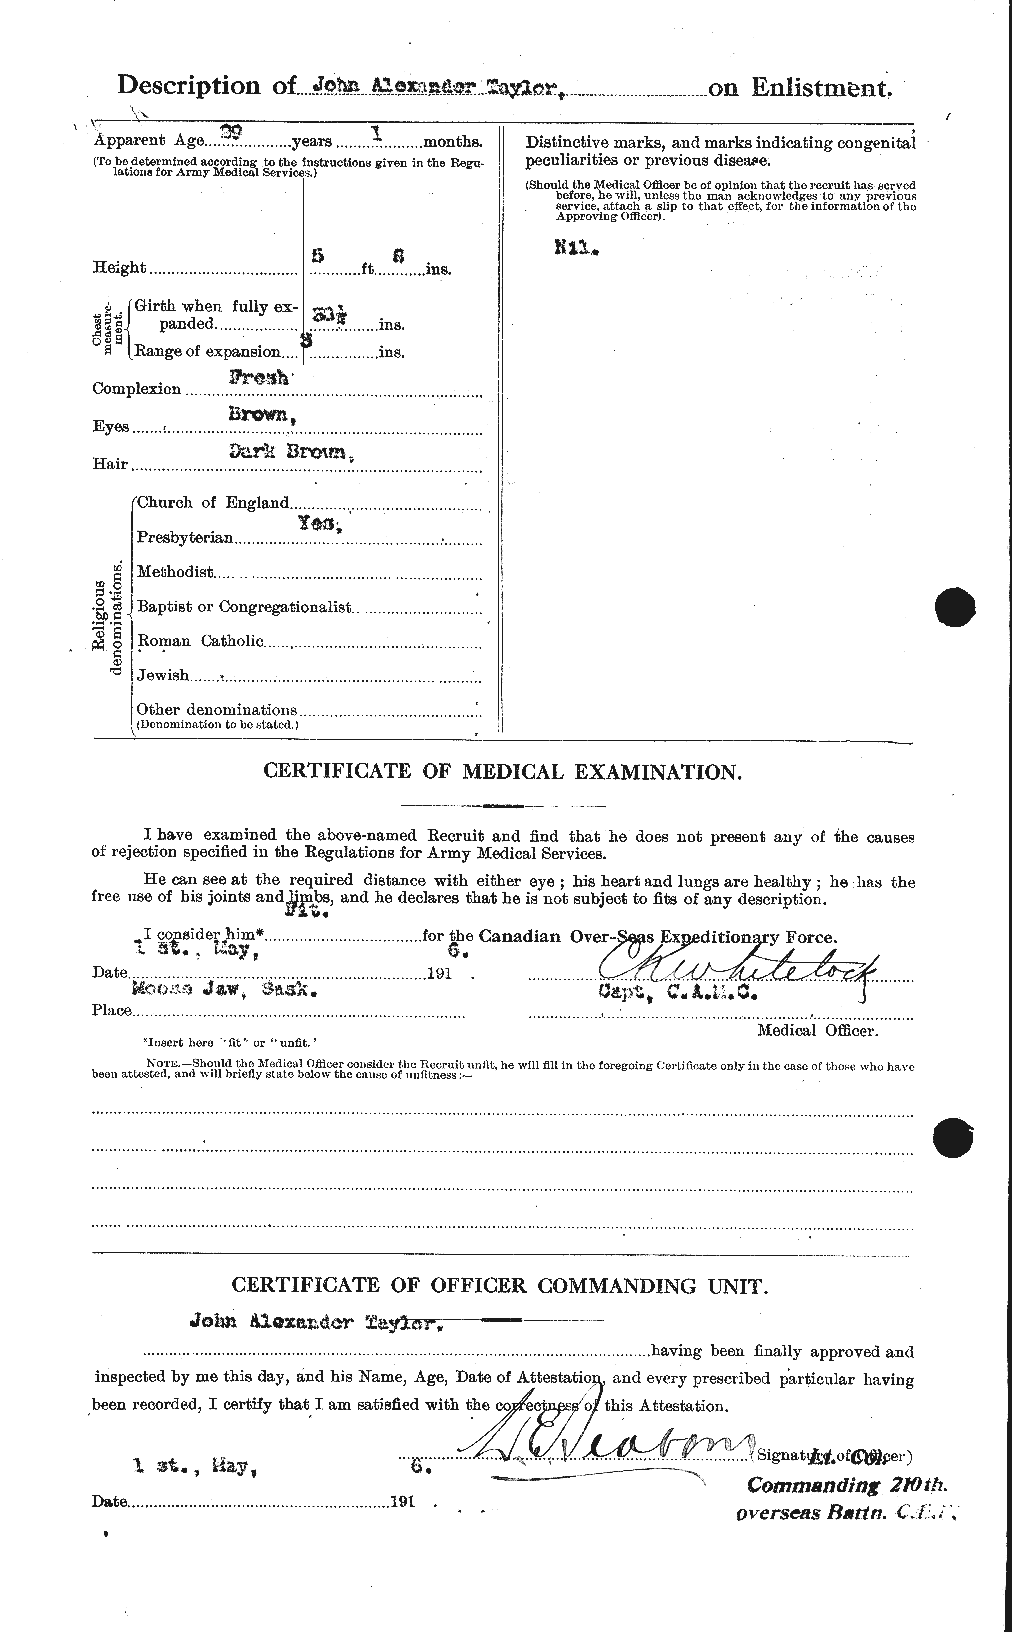 Dossiers du Personnel de la Première Guerre mondiale - CEC 627042b